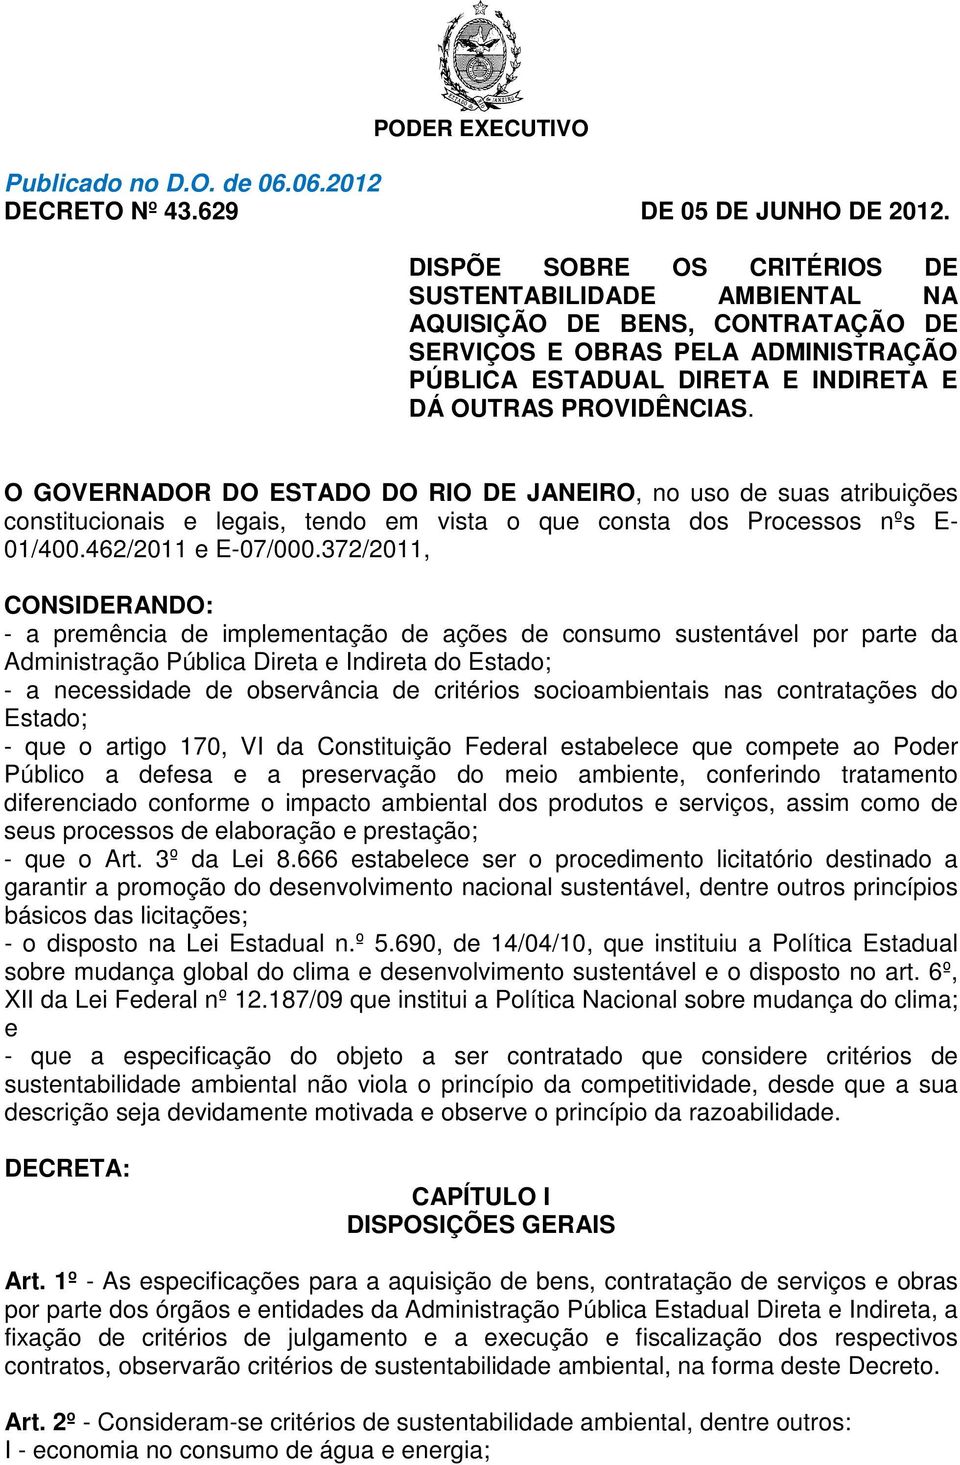 O GOVERNADOR DO ESTADO DO RIO DE JANEIRO, no uso de suas atribuições constitucionais e legais, tendo em vista o que consta dos Processos nºs E- 01/400.462/2011 e E-07/000.